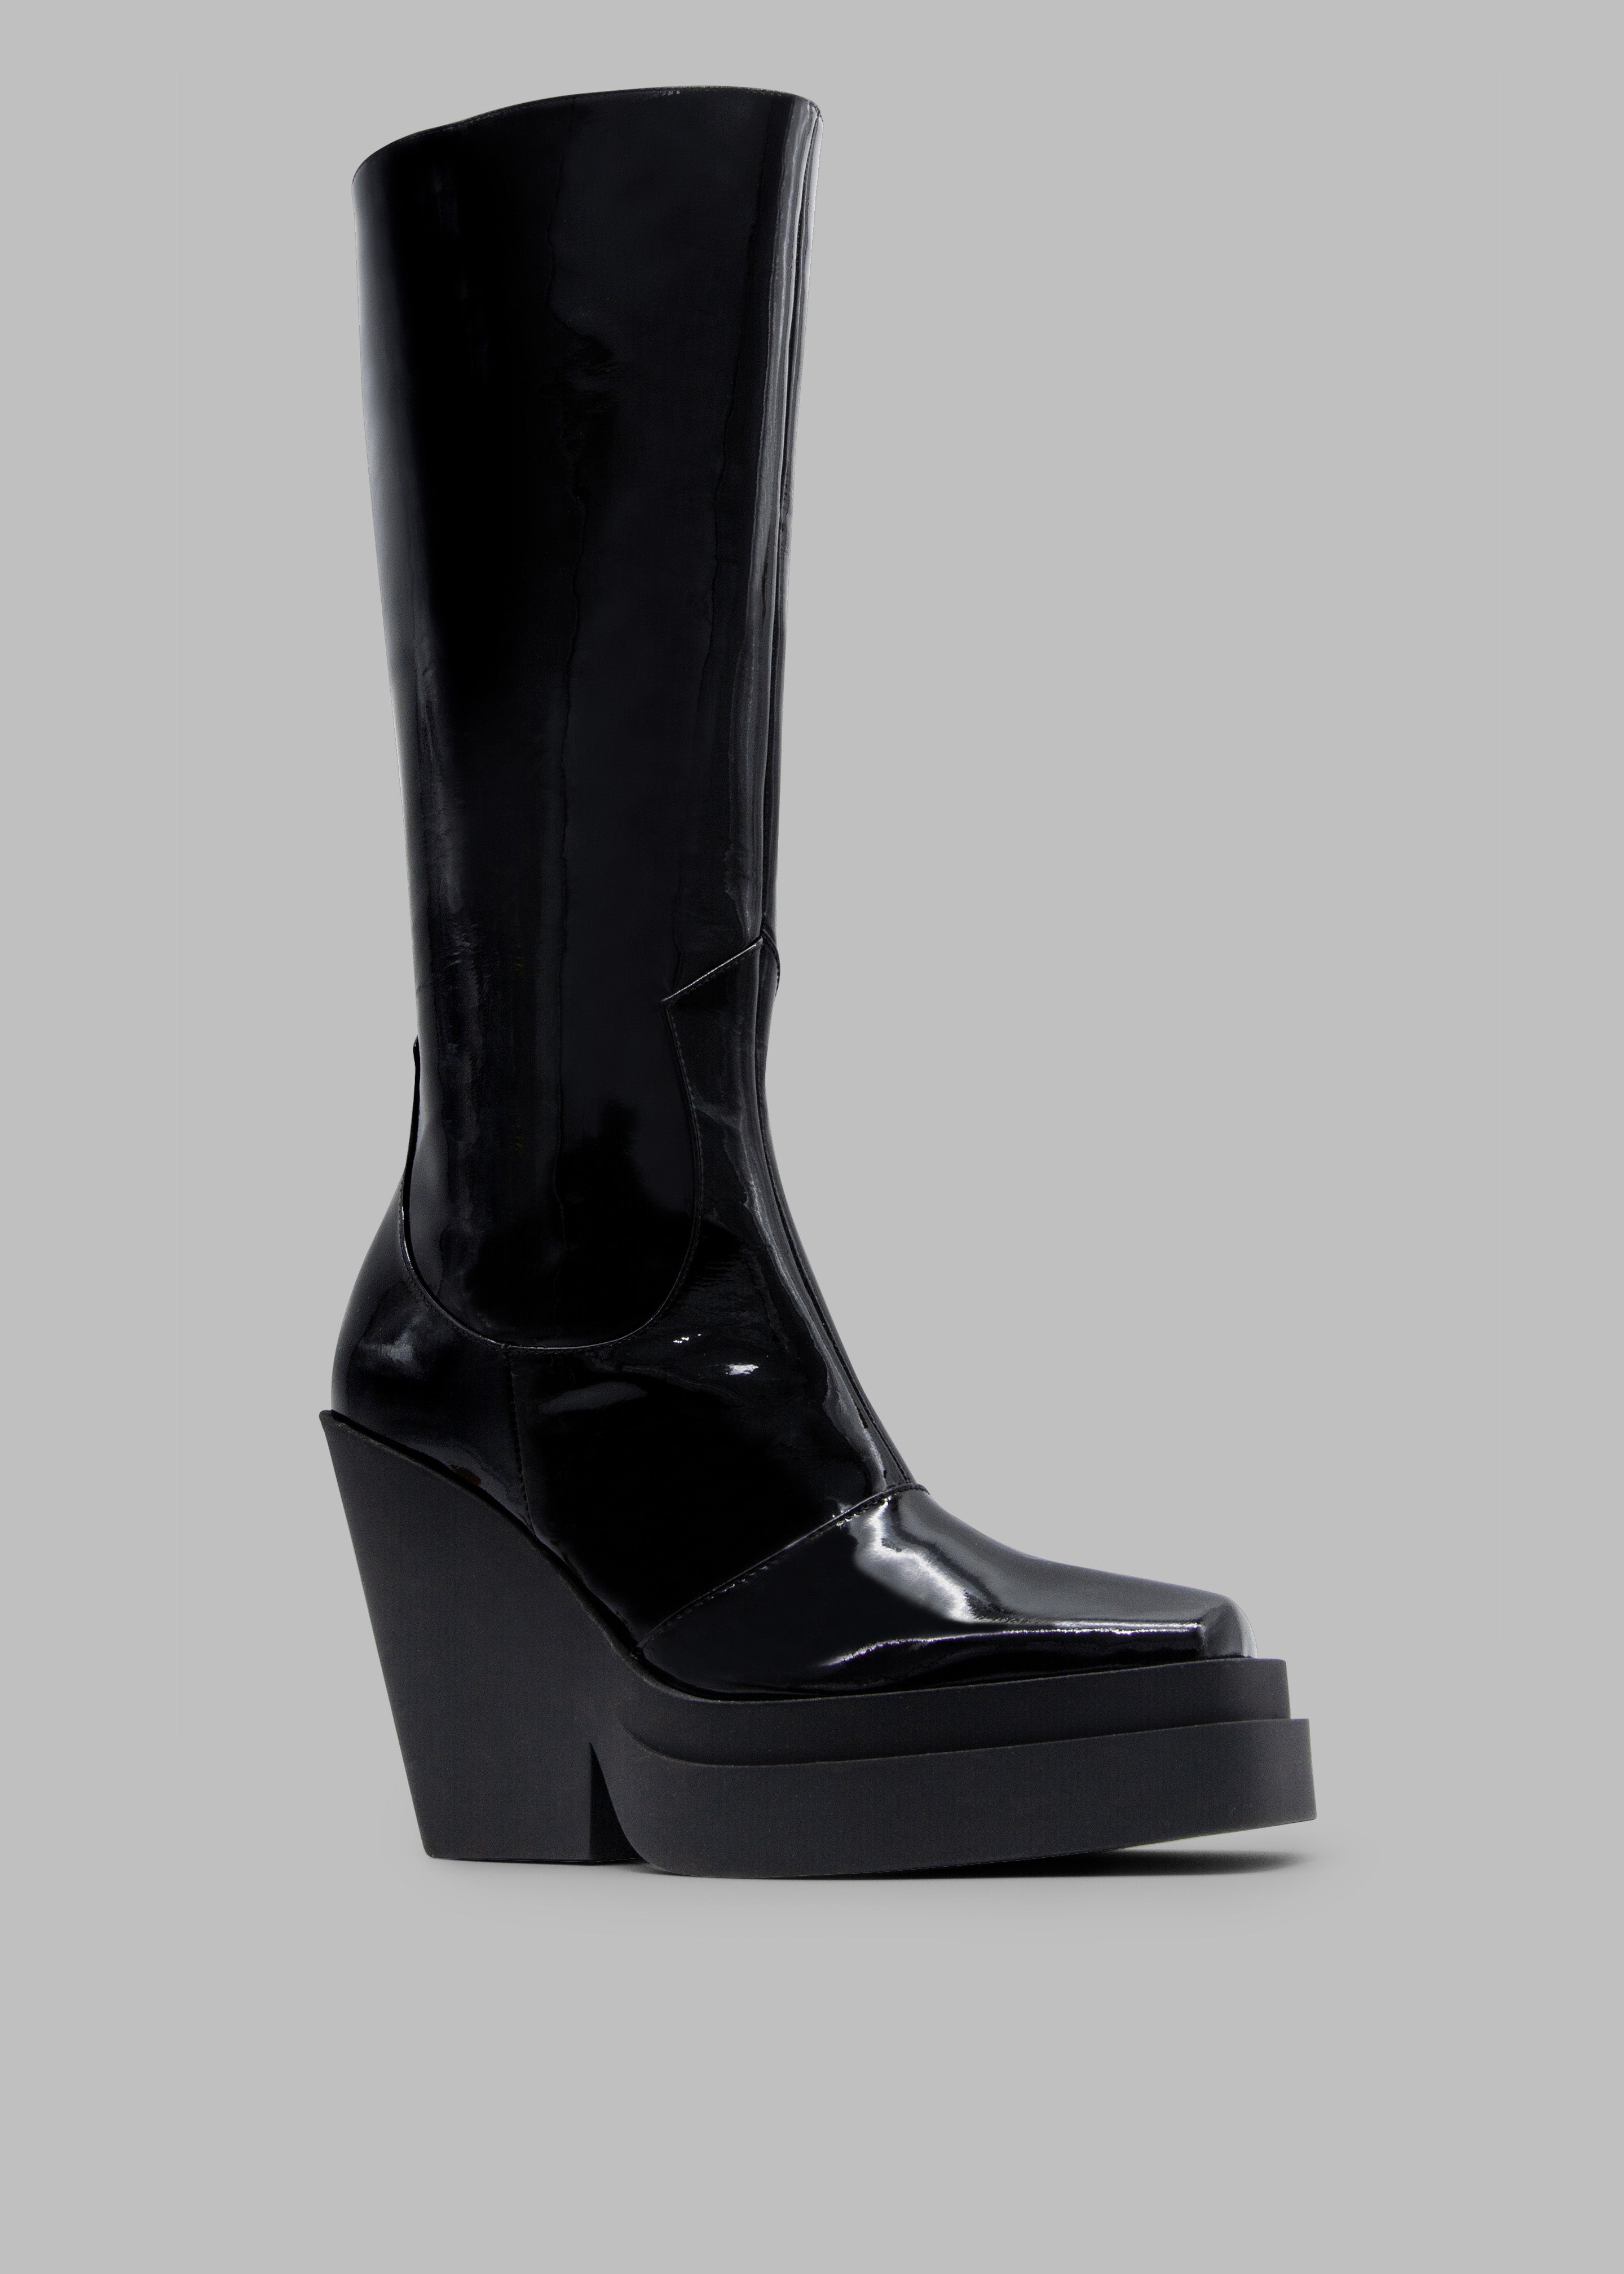 Gia Borghini Gia 14 Knee-High Texan Boots - Patent Black - 3